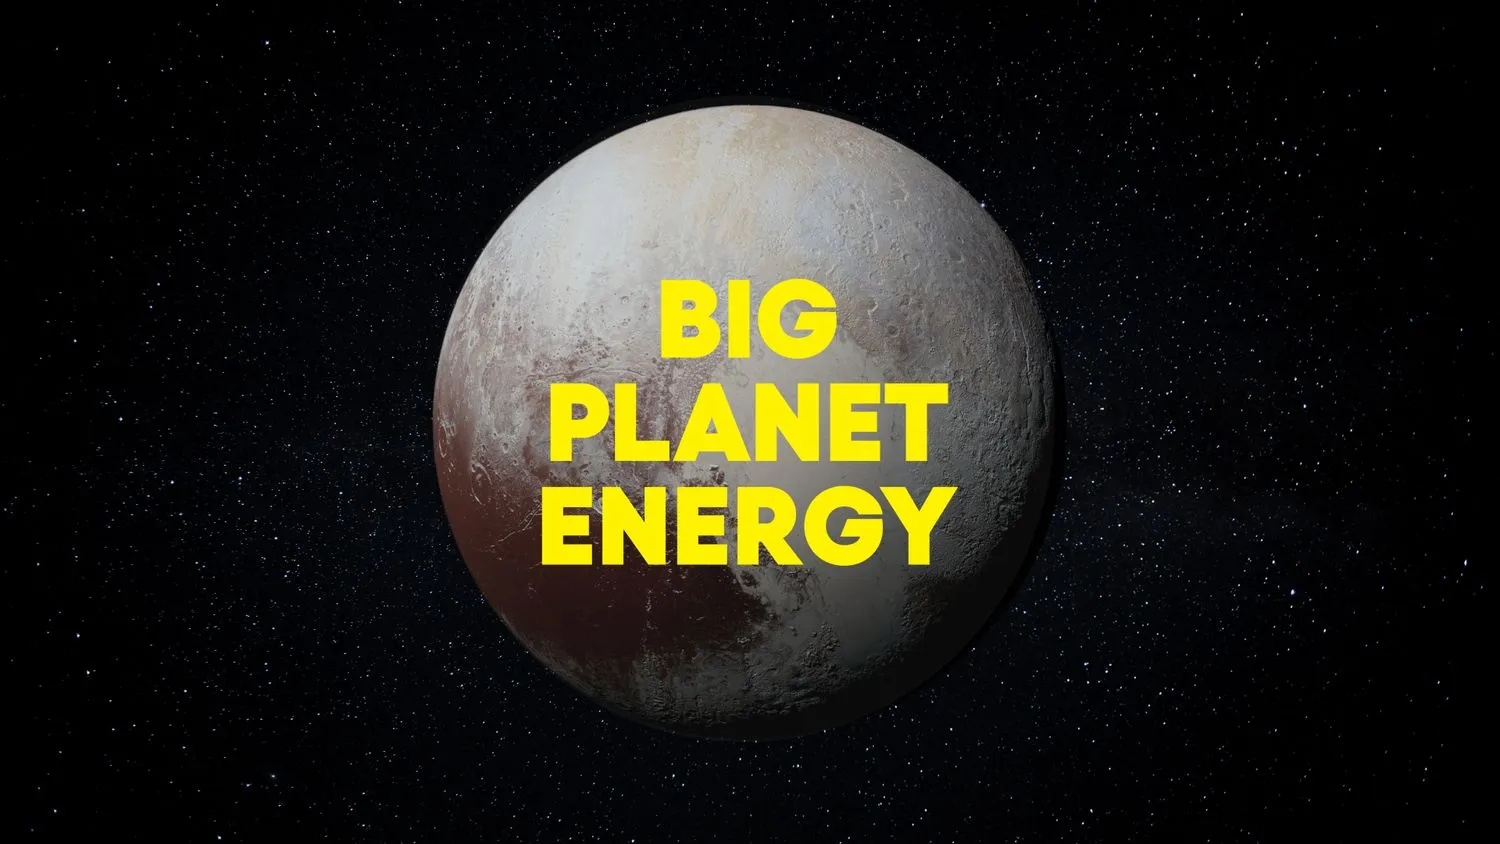 Mehr über den Artikel erfahren Pluto TV wird sich dafür einsetzen, dass Pluto am 1. April wieder ein Planet wird (kein Witz)